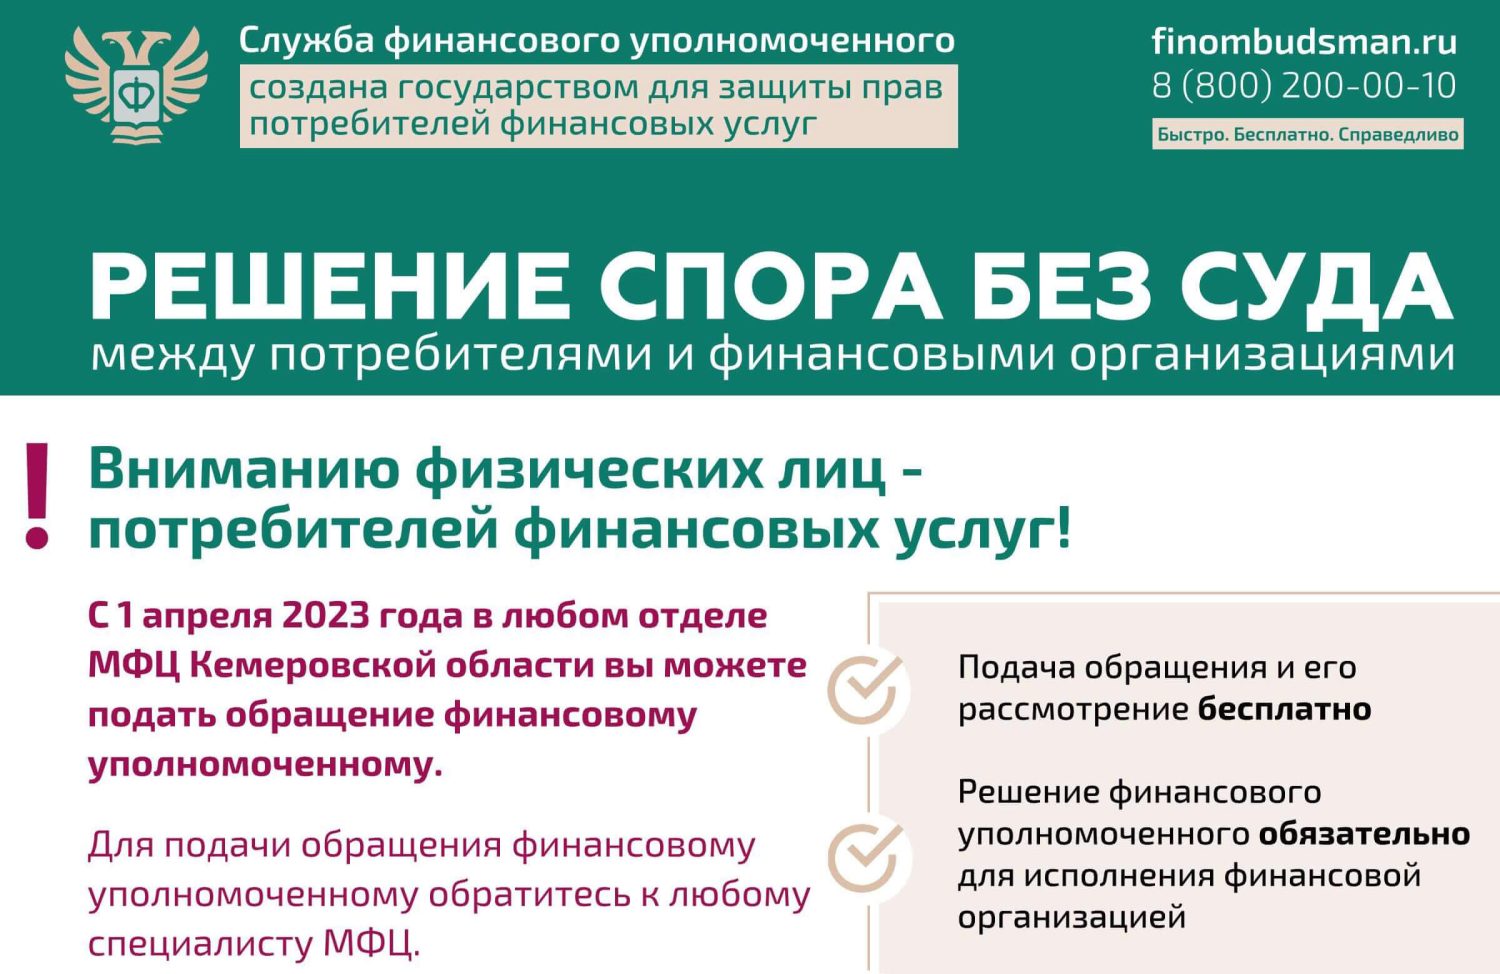 Сайт службы финансового уполномоченного. Приемная комиссия 2023. Финансовый уполномоченный Максимова.